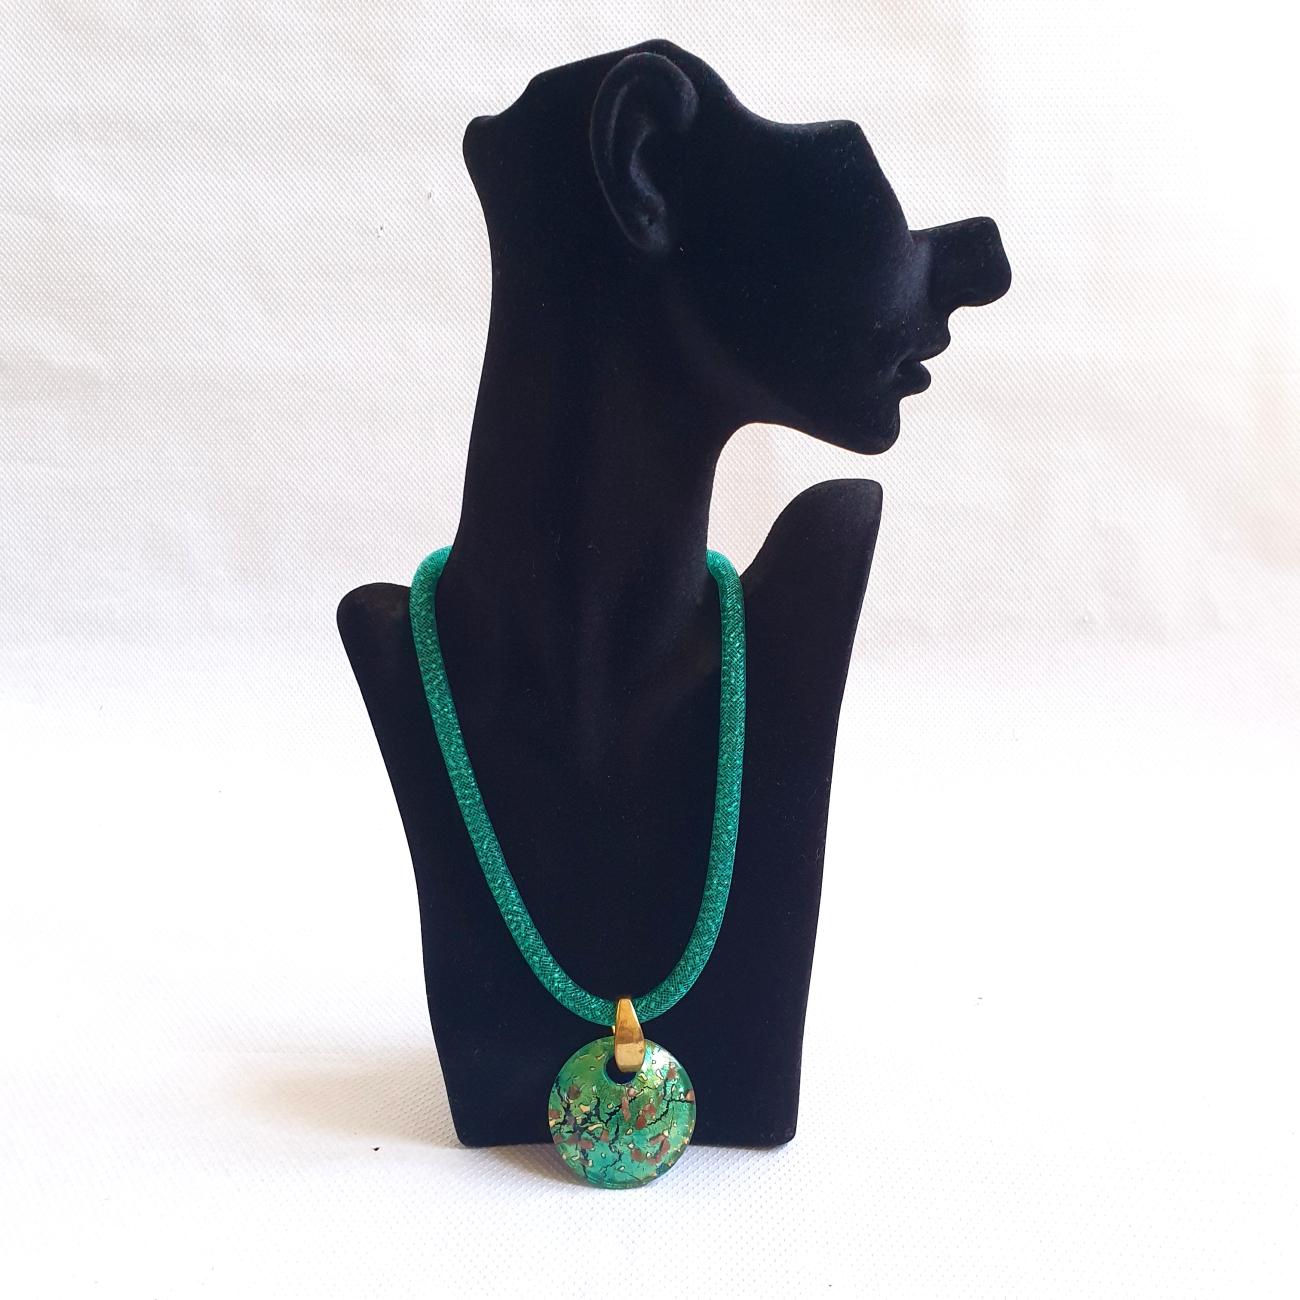 Muranoglas-Anhänger Kostüm-Halskette, Italien.
Die konvexe Verzierung aus Muranoglas und der Messinghaken sind Vintage, etwa aus den 1970er Jahren. 
Die Perlenkette und der Verschluss sind neu.
In einem schönen hellgrünen Farbe, und ausgezeichneten